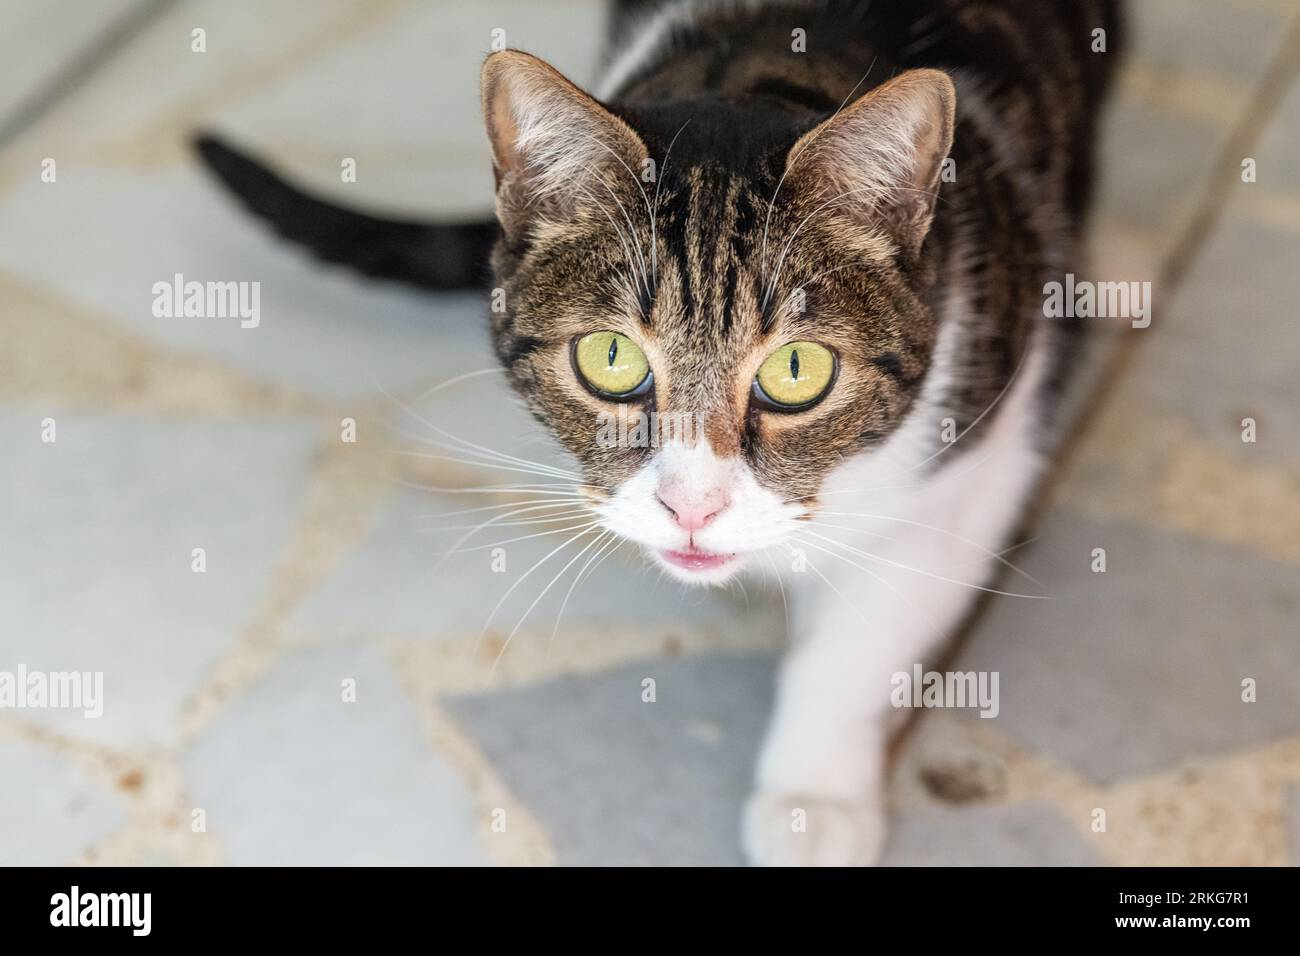 Gatti dentro casa immagini e fotografie stock ad alta risoluzione - Alamy